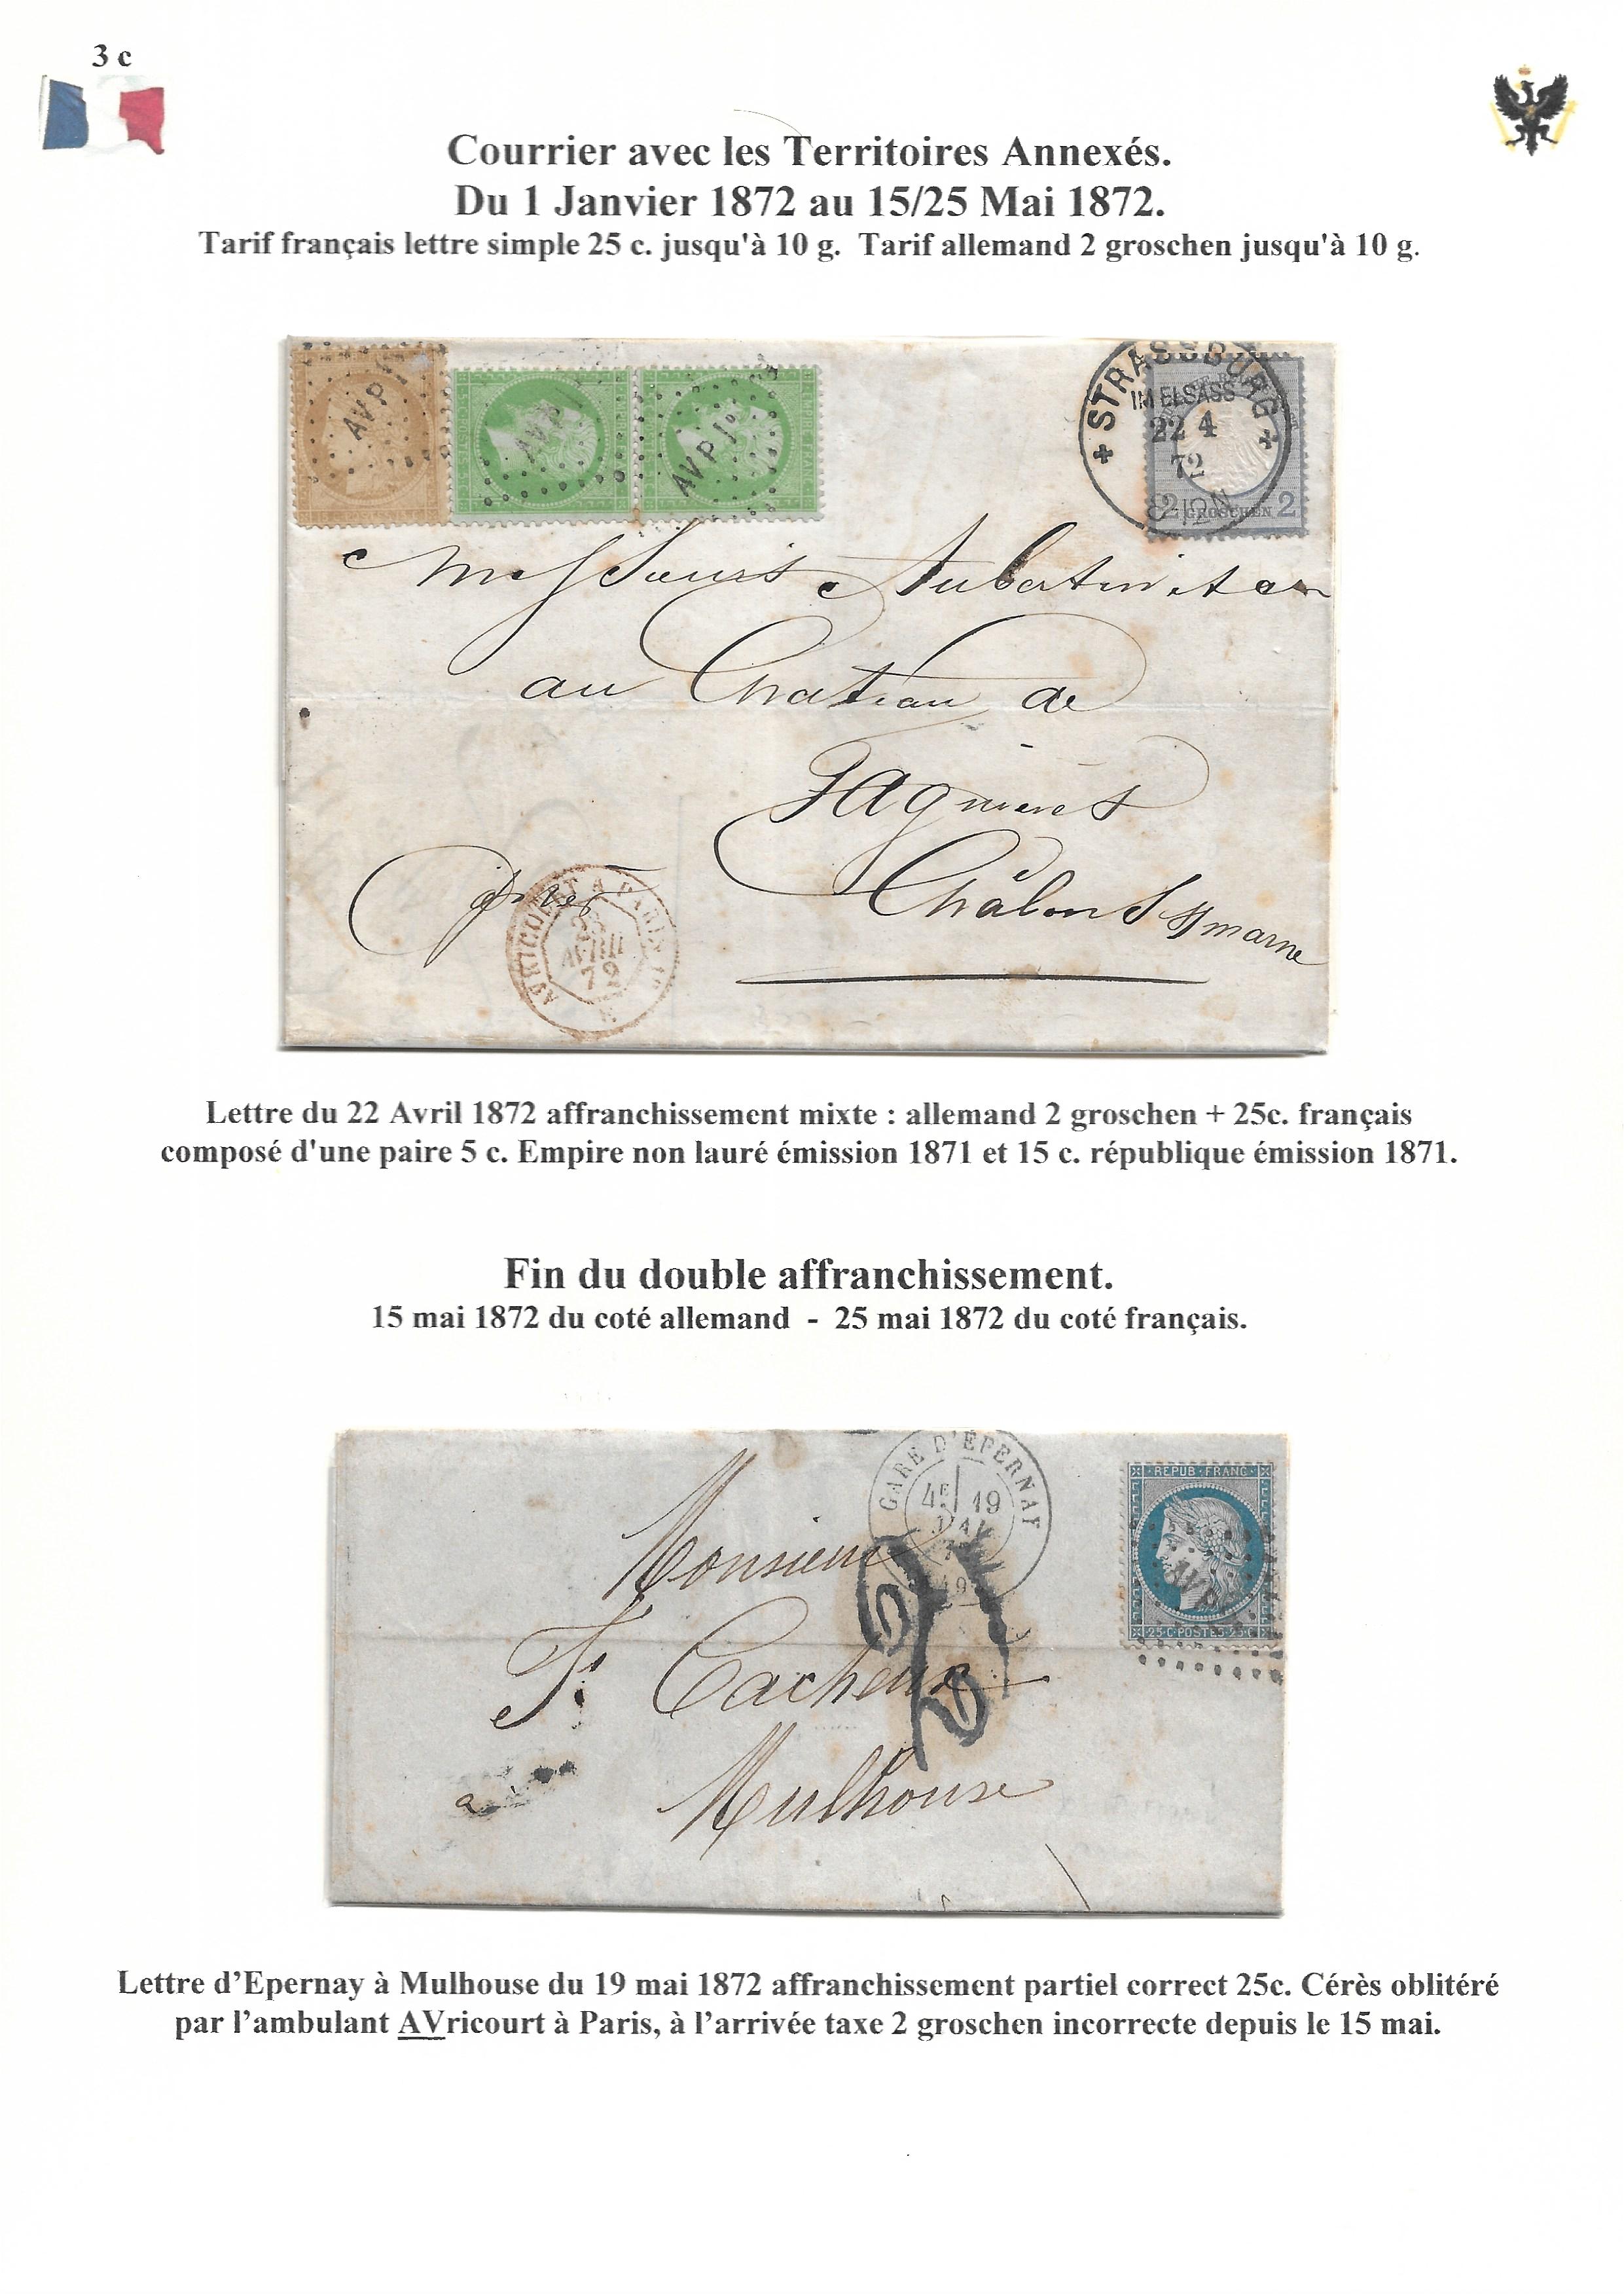 Occupation Prussienne dans la Marne 1870-1872 : Cons��quences sur les relations postales p. 43